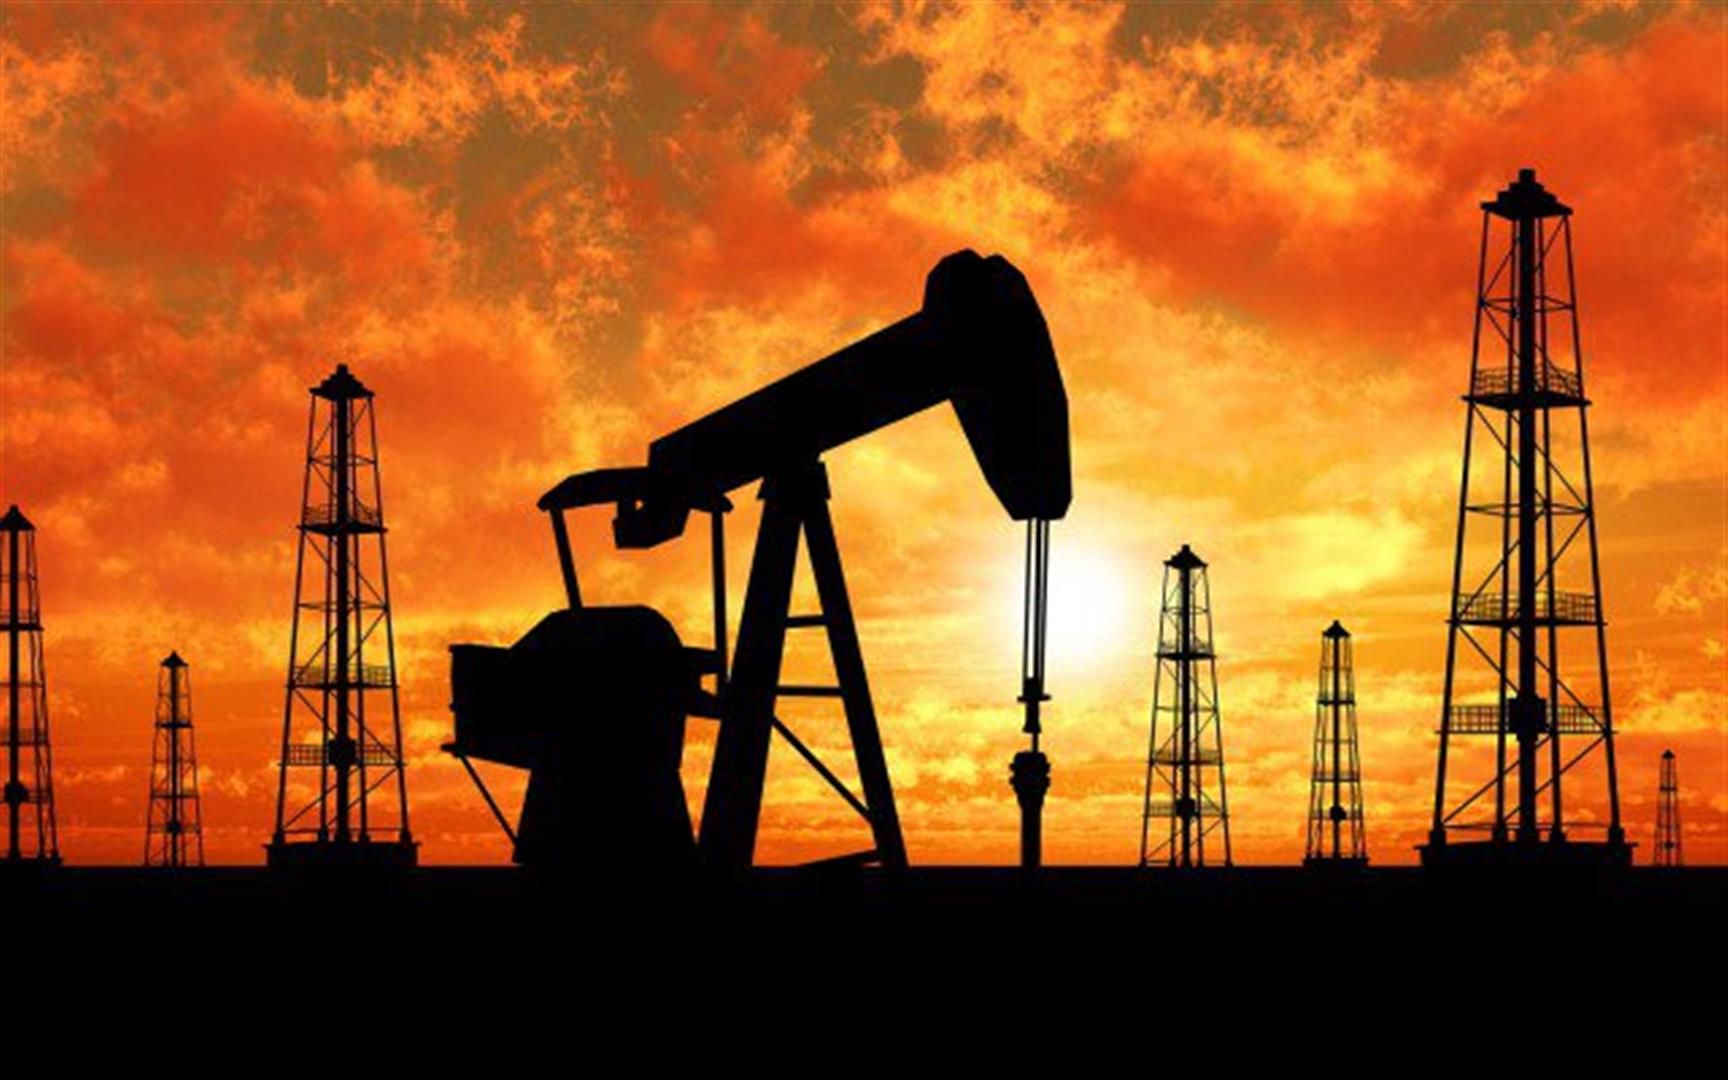 Цена на нефть WTI упала ниже 20 долларов впервые за 18 лет - Россия и ОПЕК несут огромные убытки